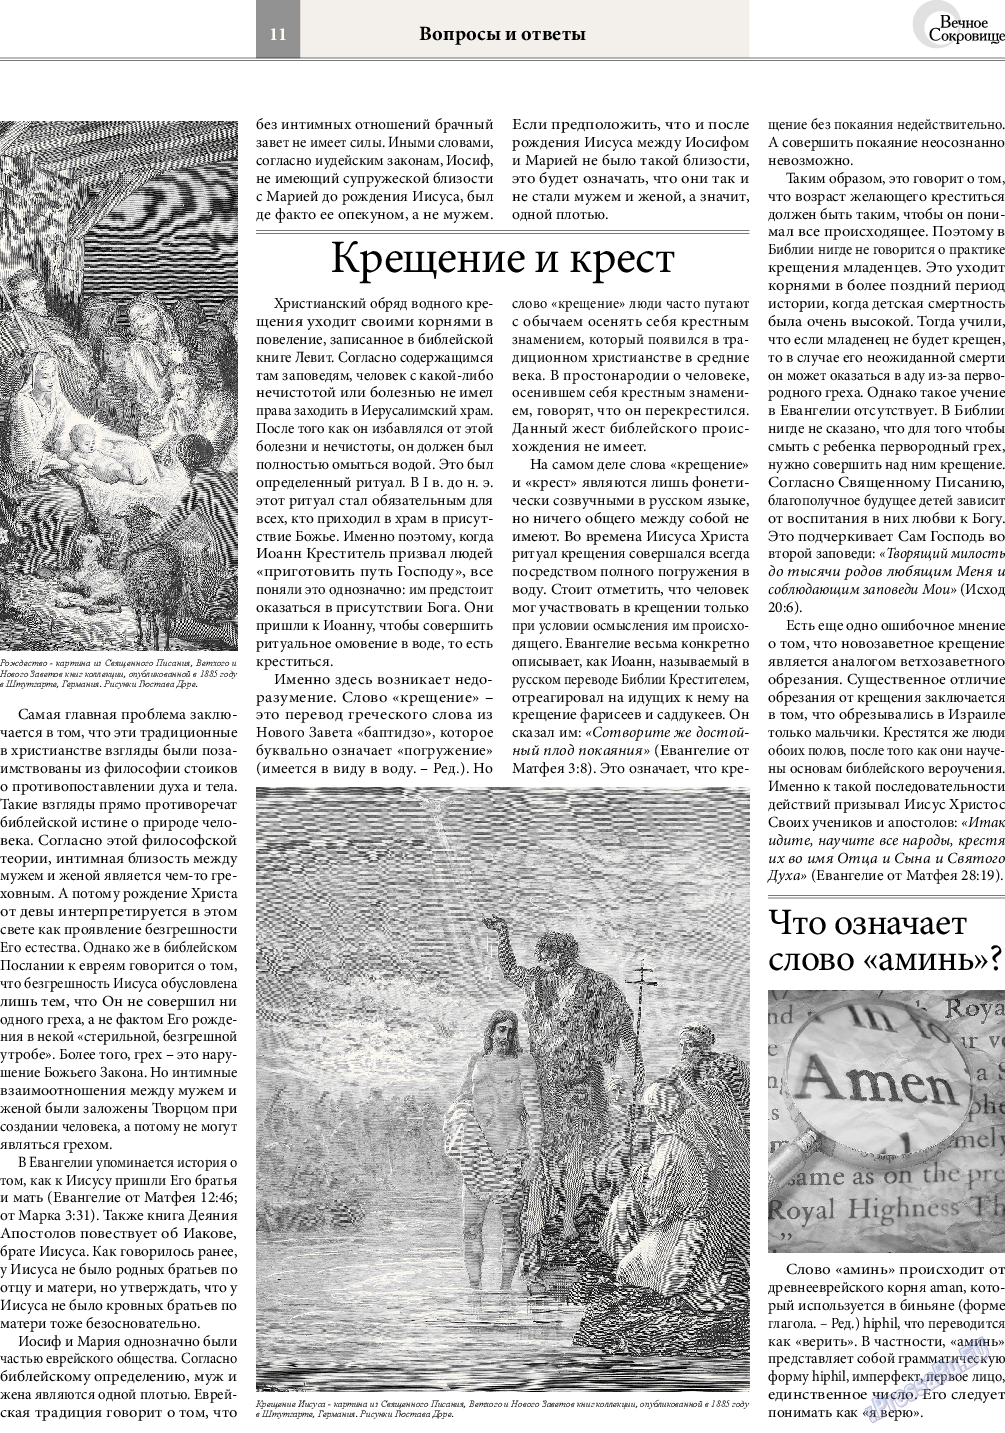 Вечное сокровище, газета. 2016 №1 стр.11